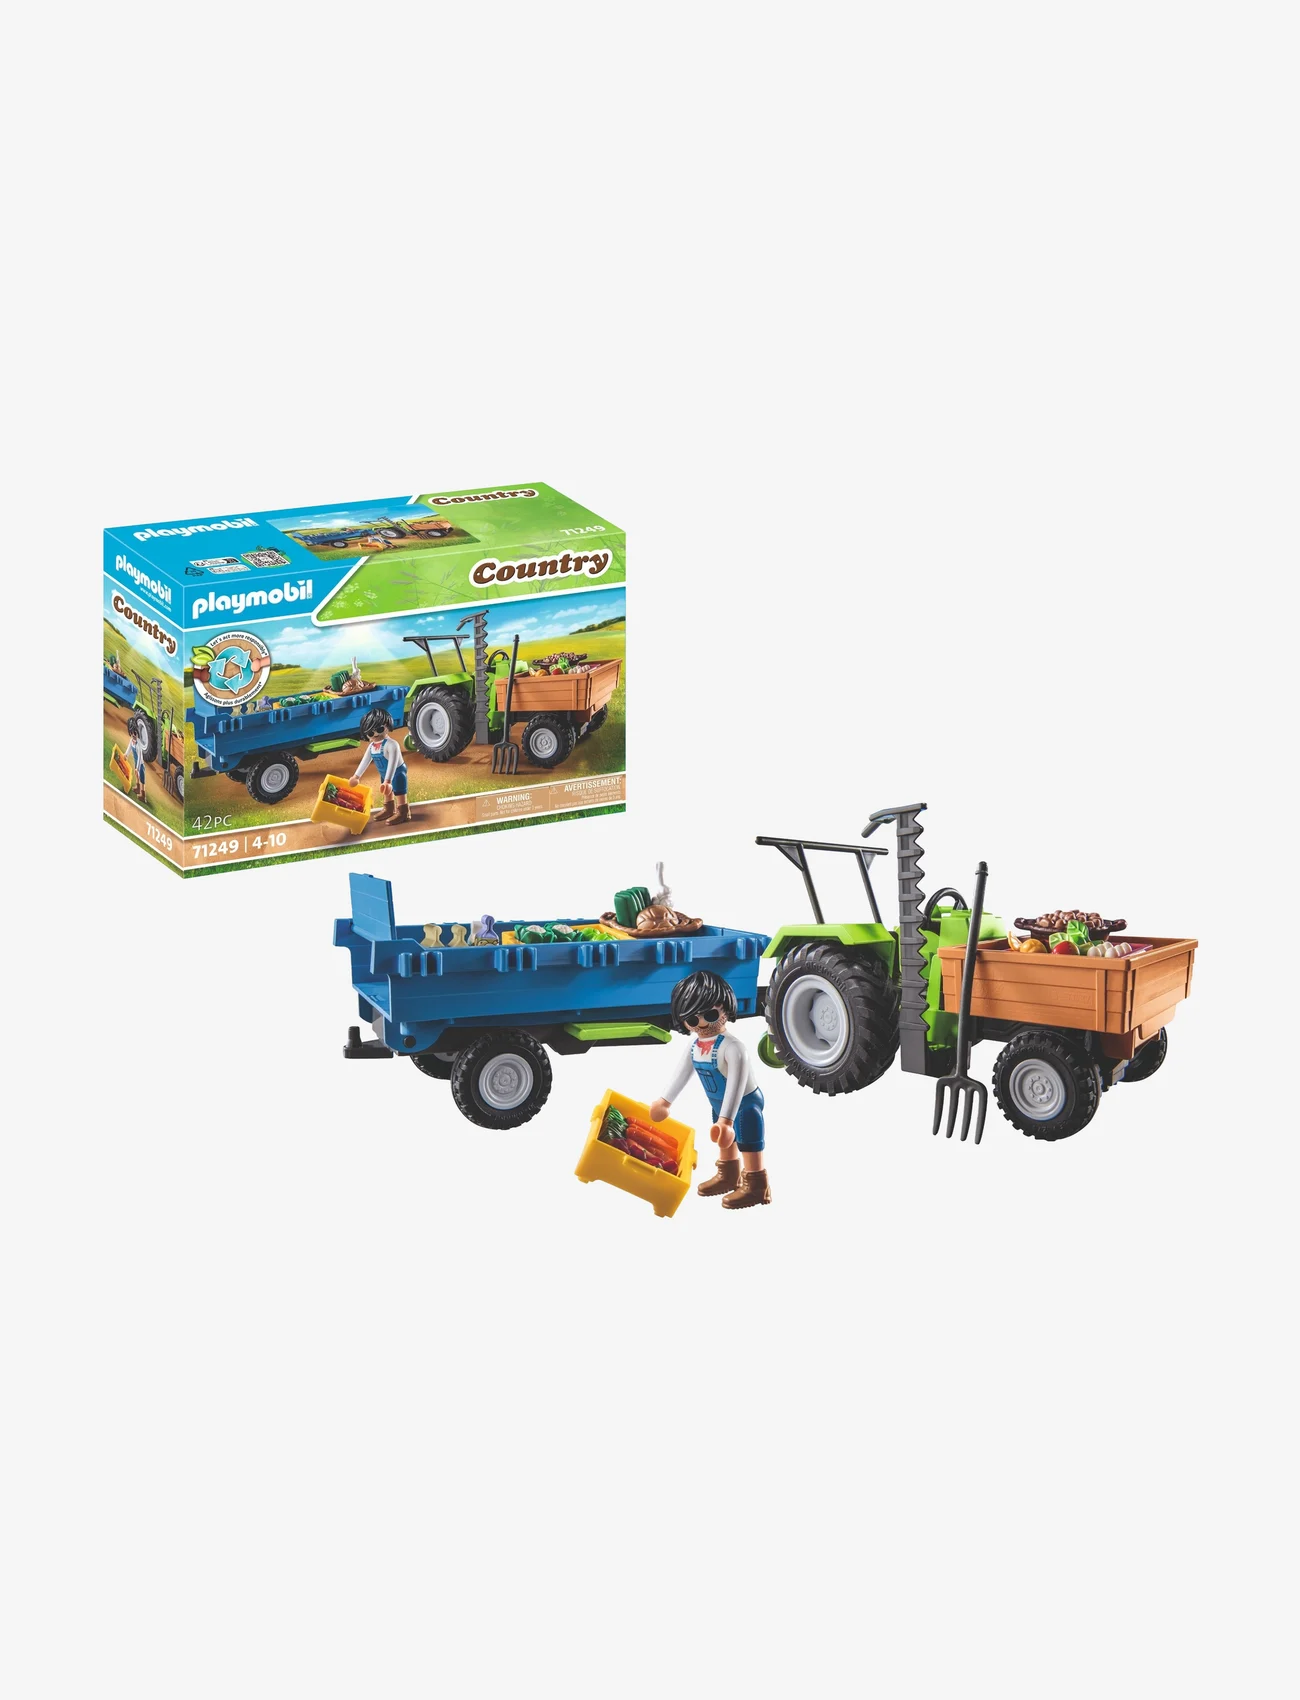 PLAYMOBIL - PLAYMOBIL Country Traktor med släp - 71249 - playmobil country - multicolored - 0